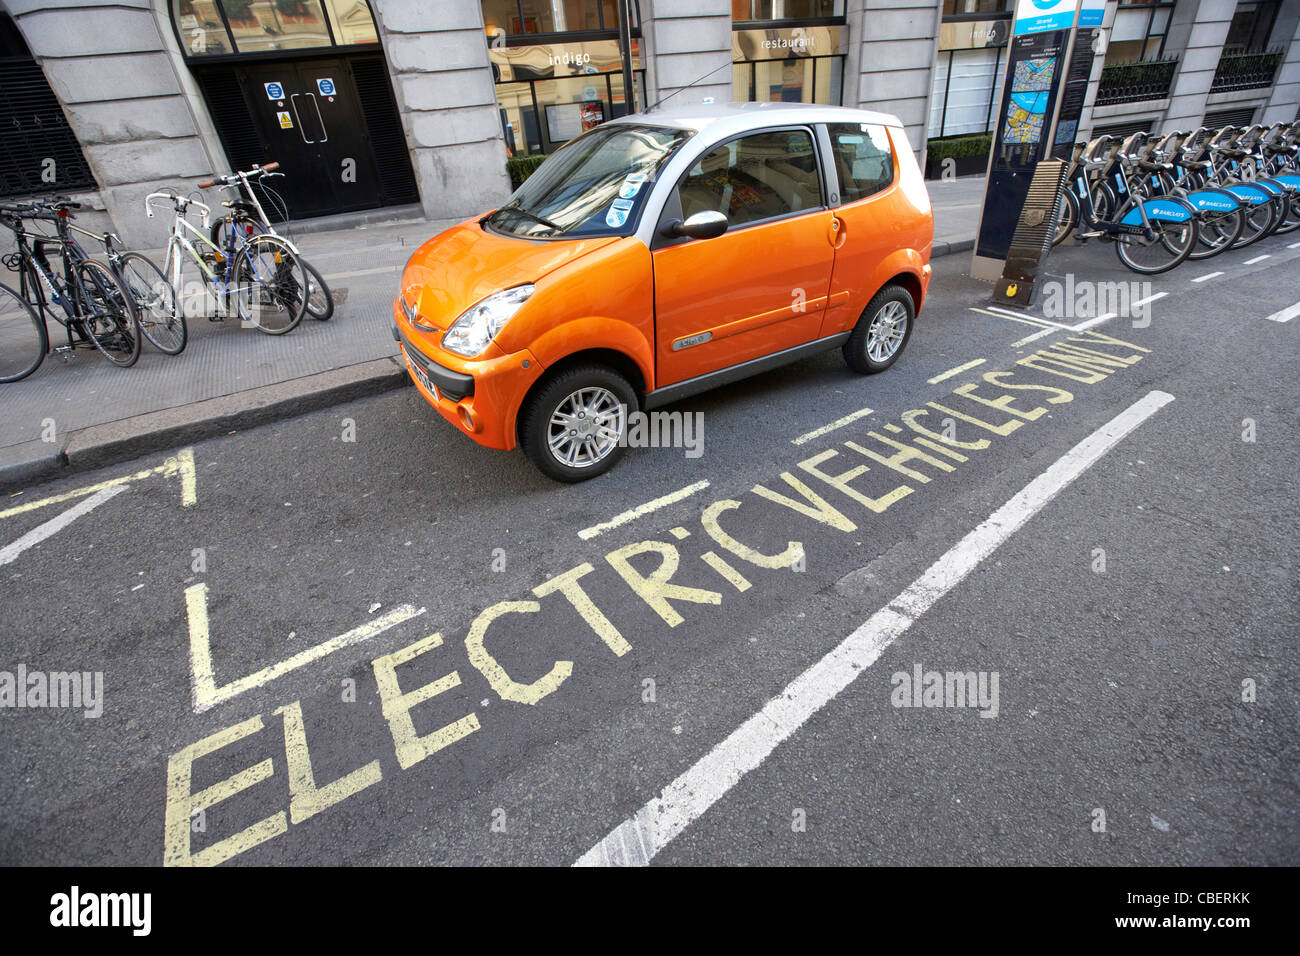 Parking véhicules électriques et plein air London England uk united kingdom Banque D'Images